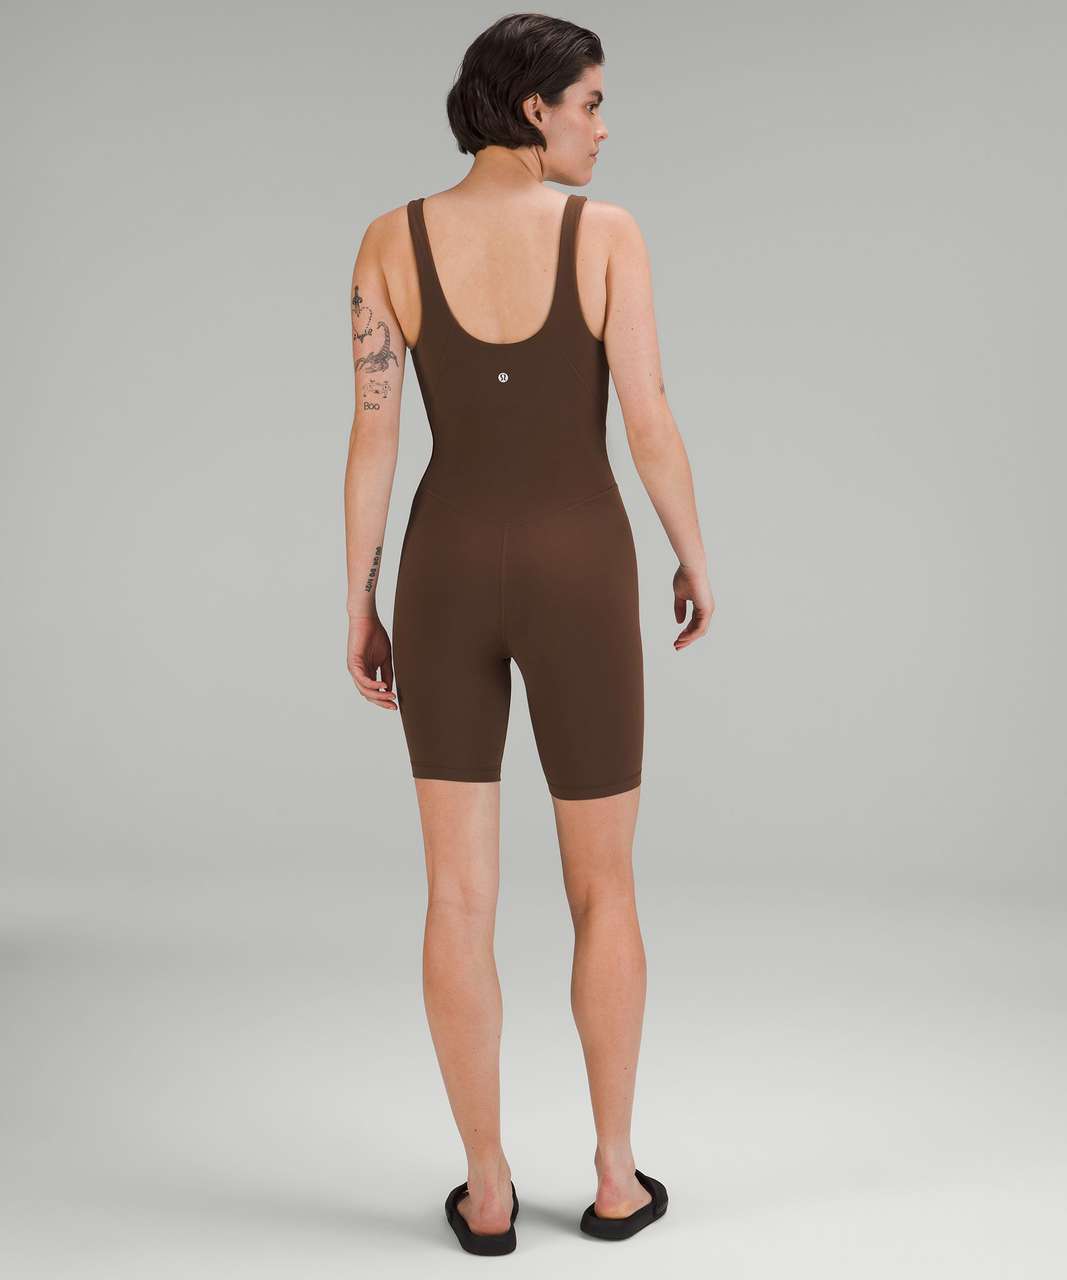 Lululemon Align™ Bodysuit 8, Women's Dresses